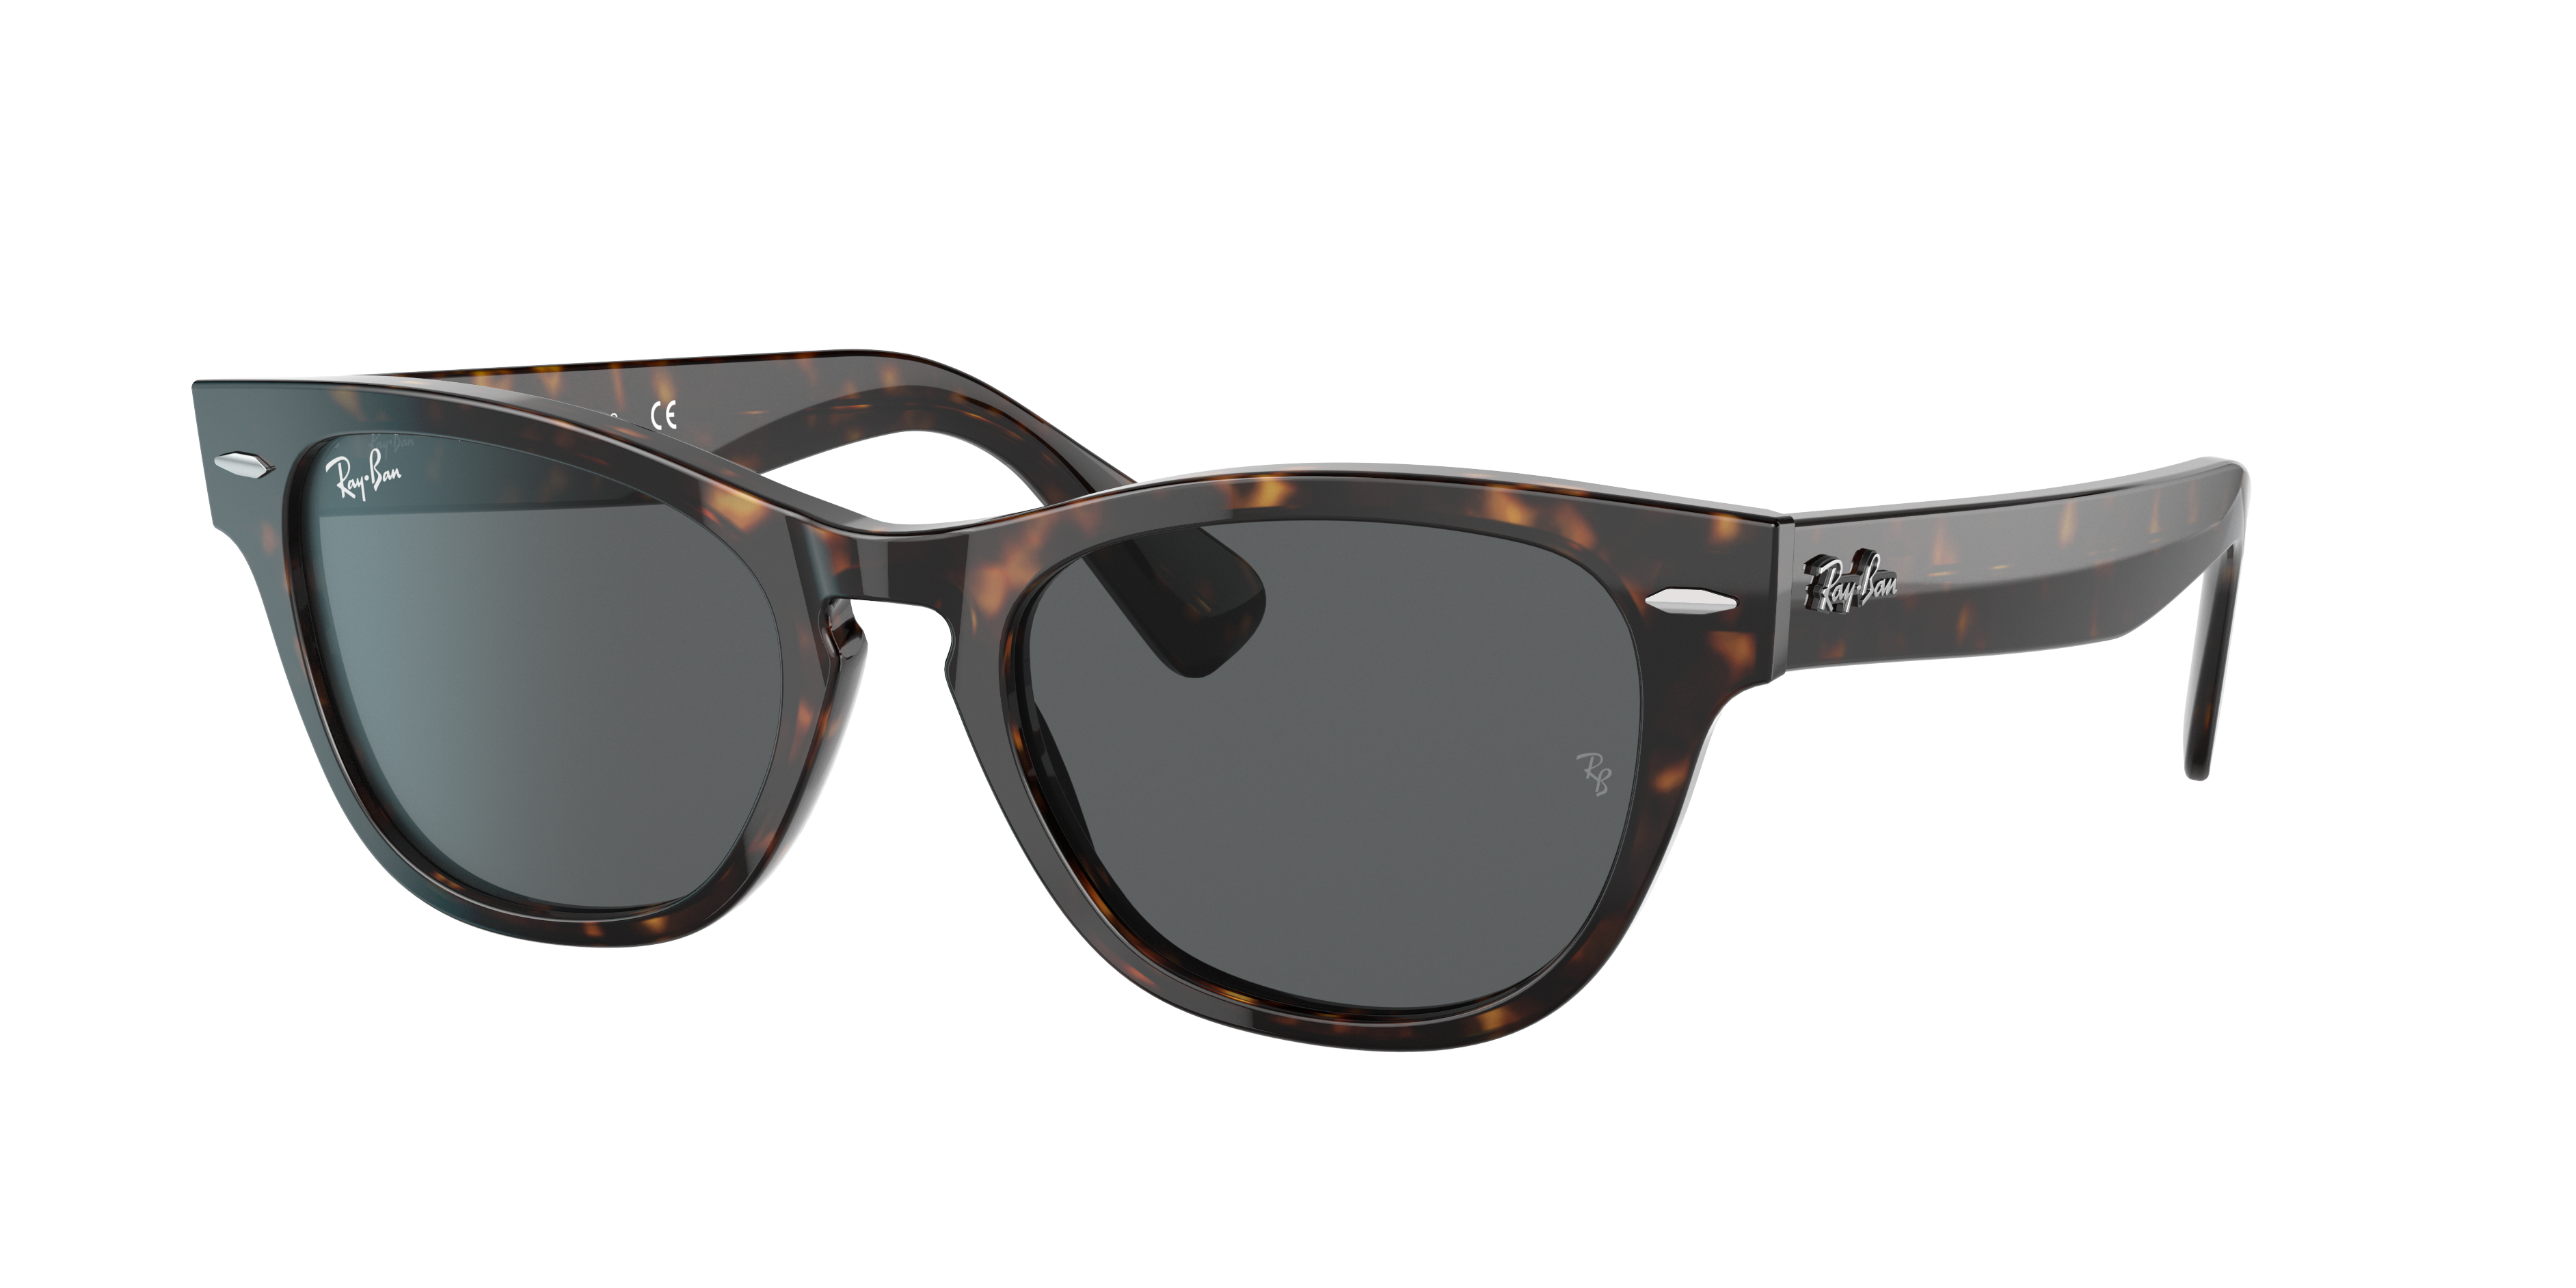 Laramie Sunglasses in Tortoise and Dark Grey | Ray-Ban®